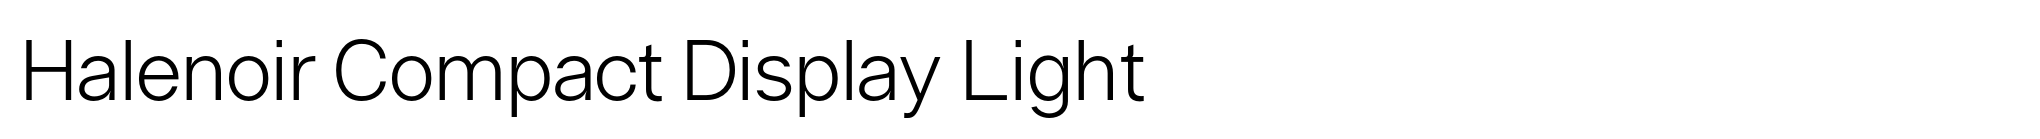 Halenoir Compact Display Light image